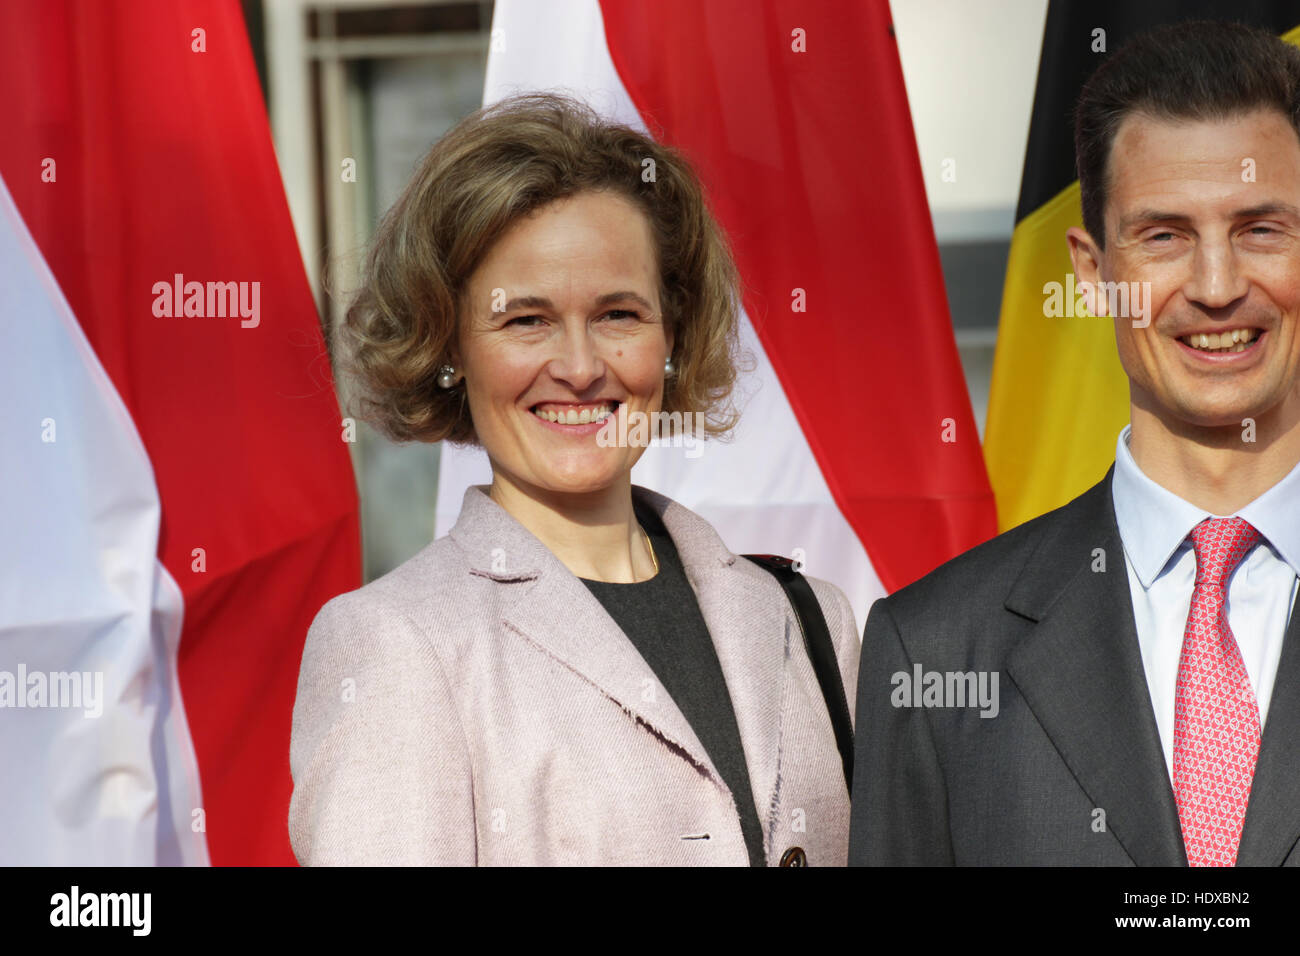 Le Prince Régent Alois de Liechtenstein et le conjoint Sophie répondre au président allemand Joachim Gauck, 18 septembre 2014 à Bad Doberan, Allemagne. Banque D'Images